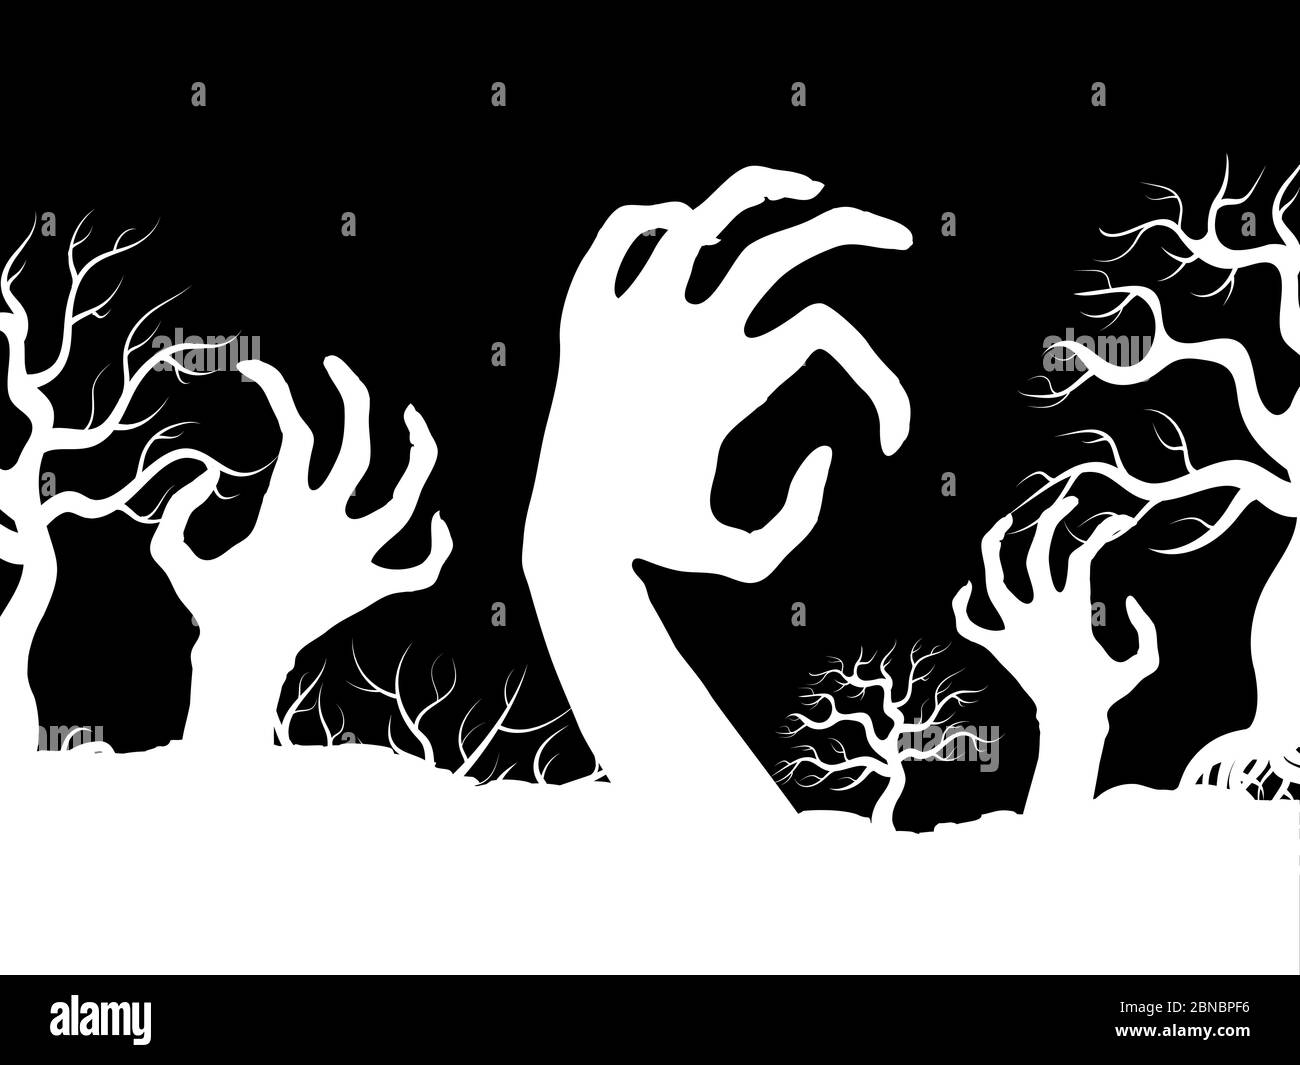 Weiß Horror Zombi Hände und Baum Silhouetten Vektor Banner Design Illustration Stock Vektor